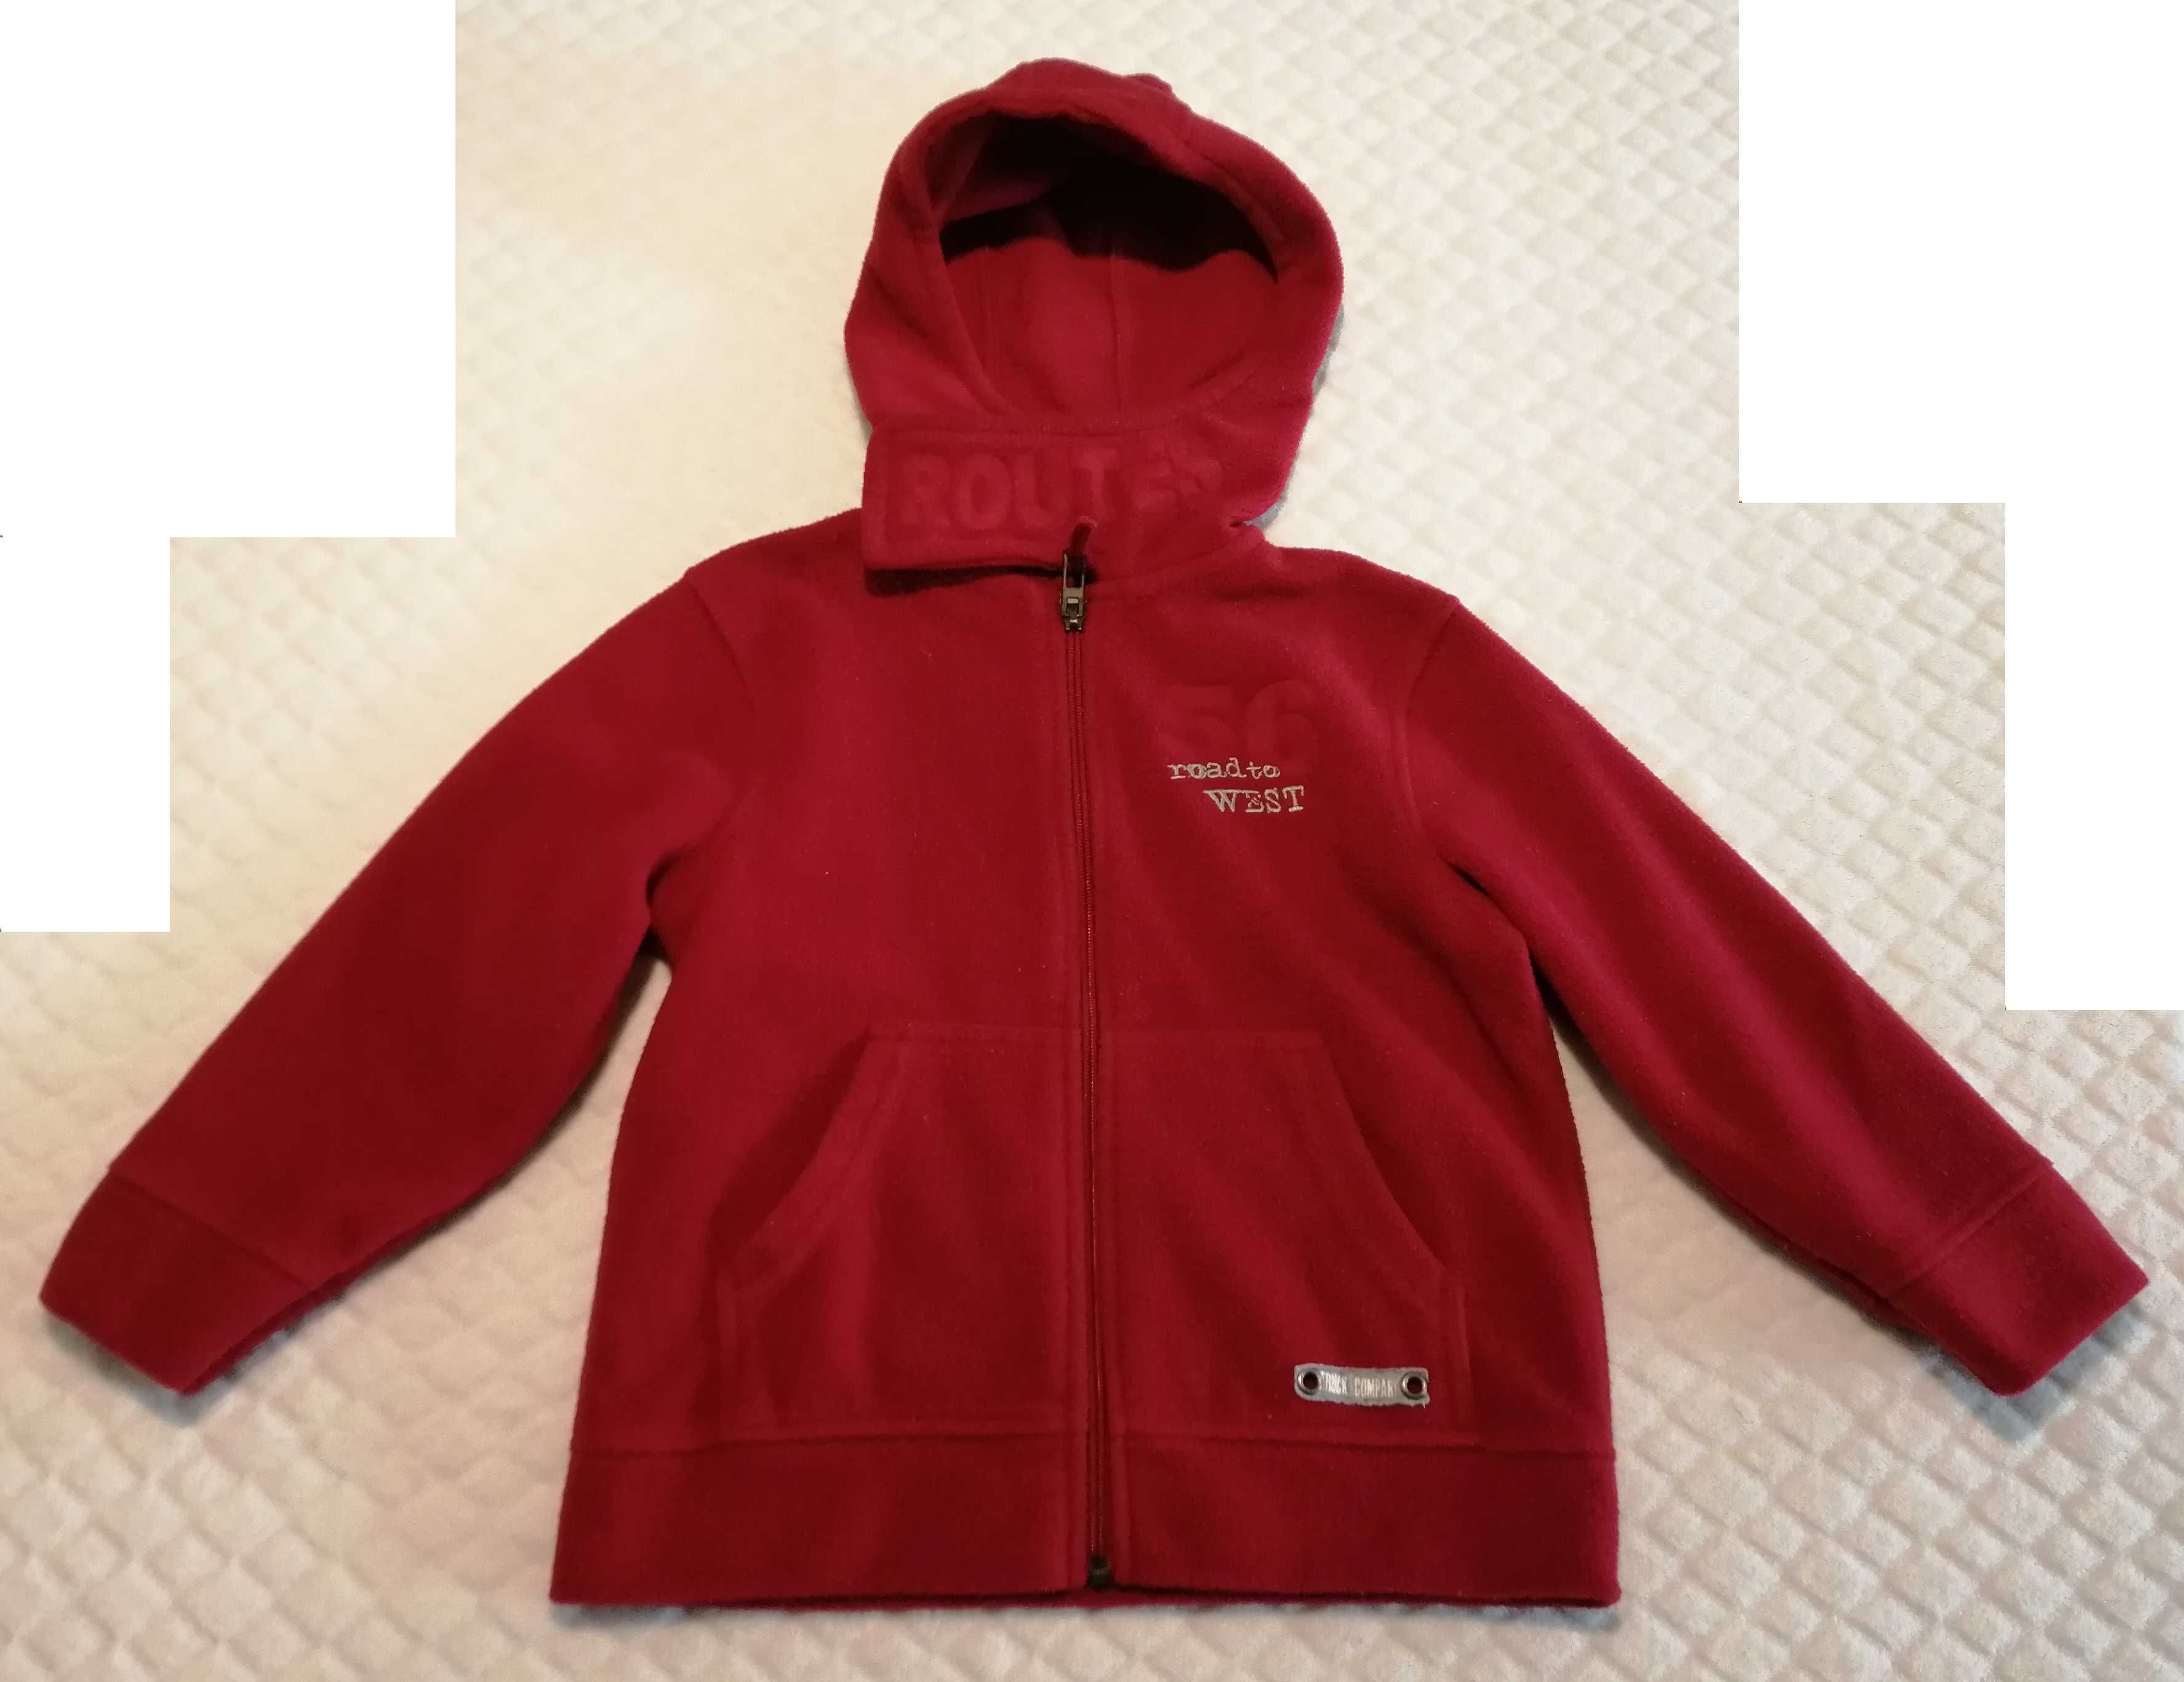 Bluza polarowa, rozpinana, ciepła z kapturem, czerwona, 116 (Odzież)